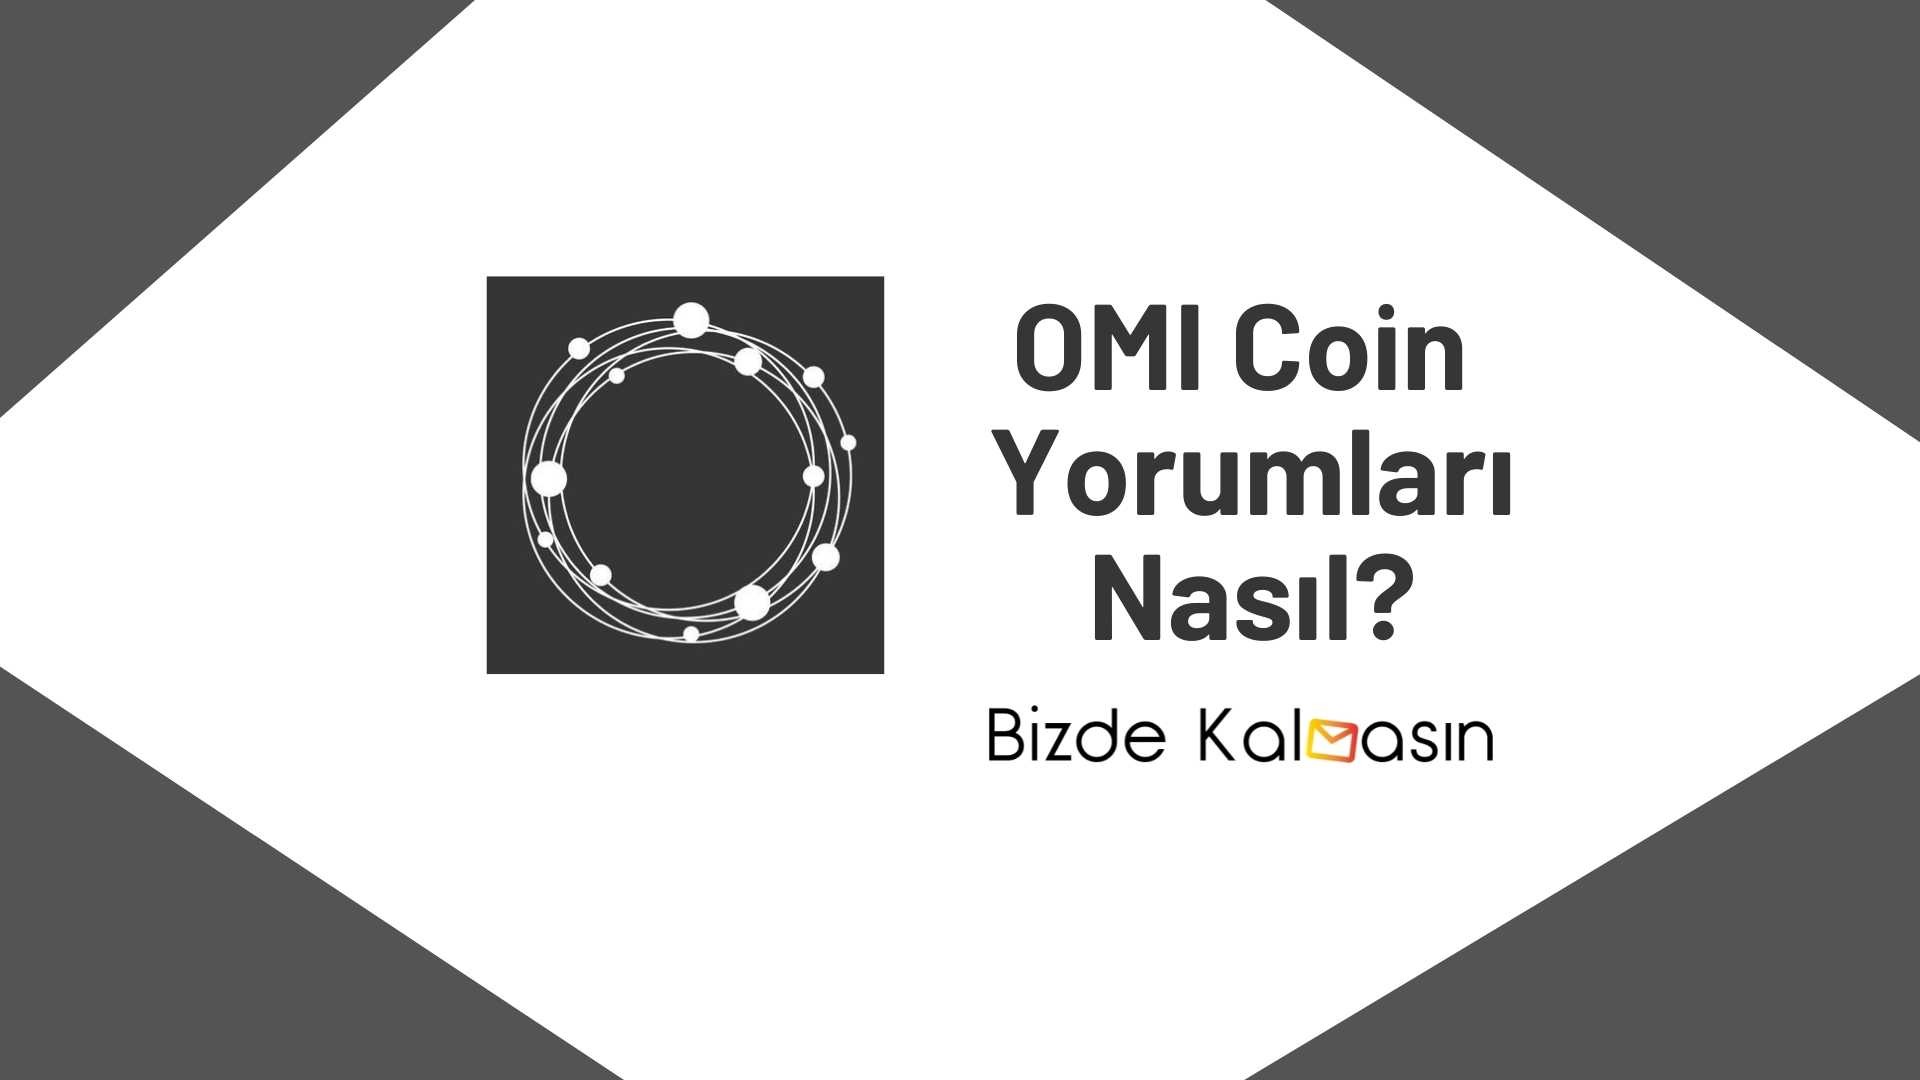 OMI Coin Yorum - ECOMI Coin Geleceği 2022 - Bizde Kalmasın